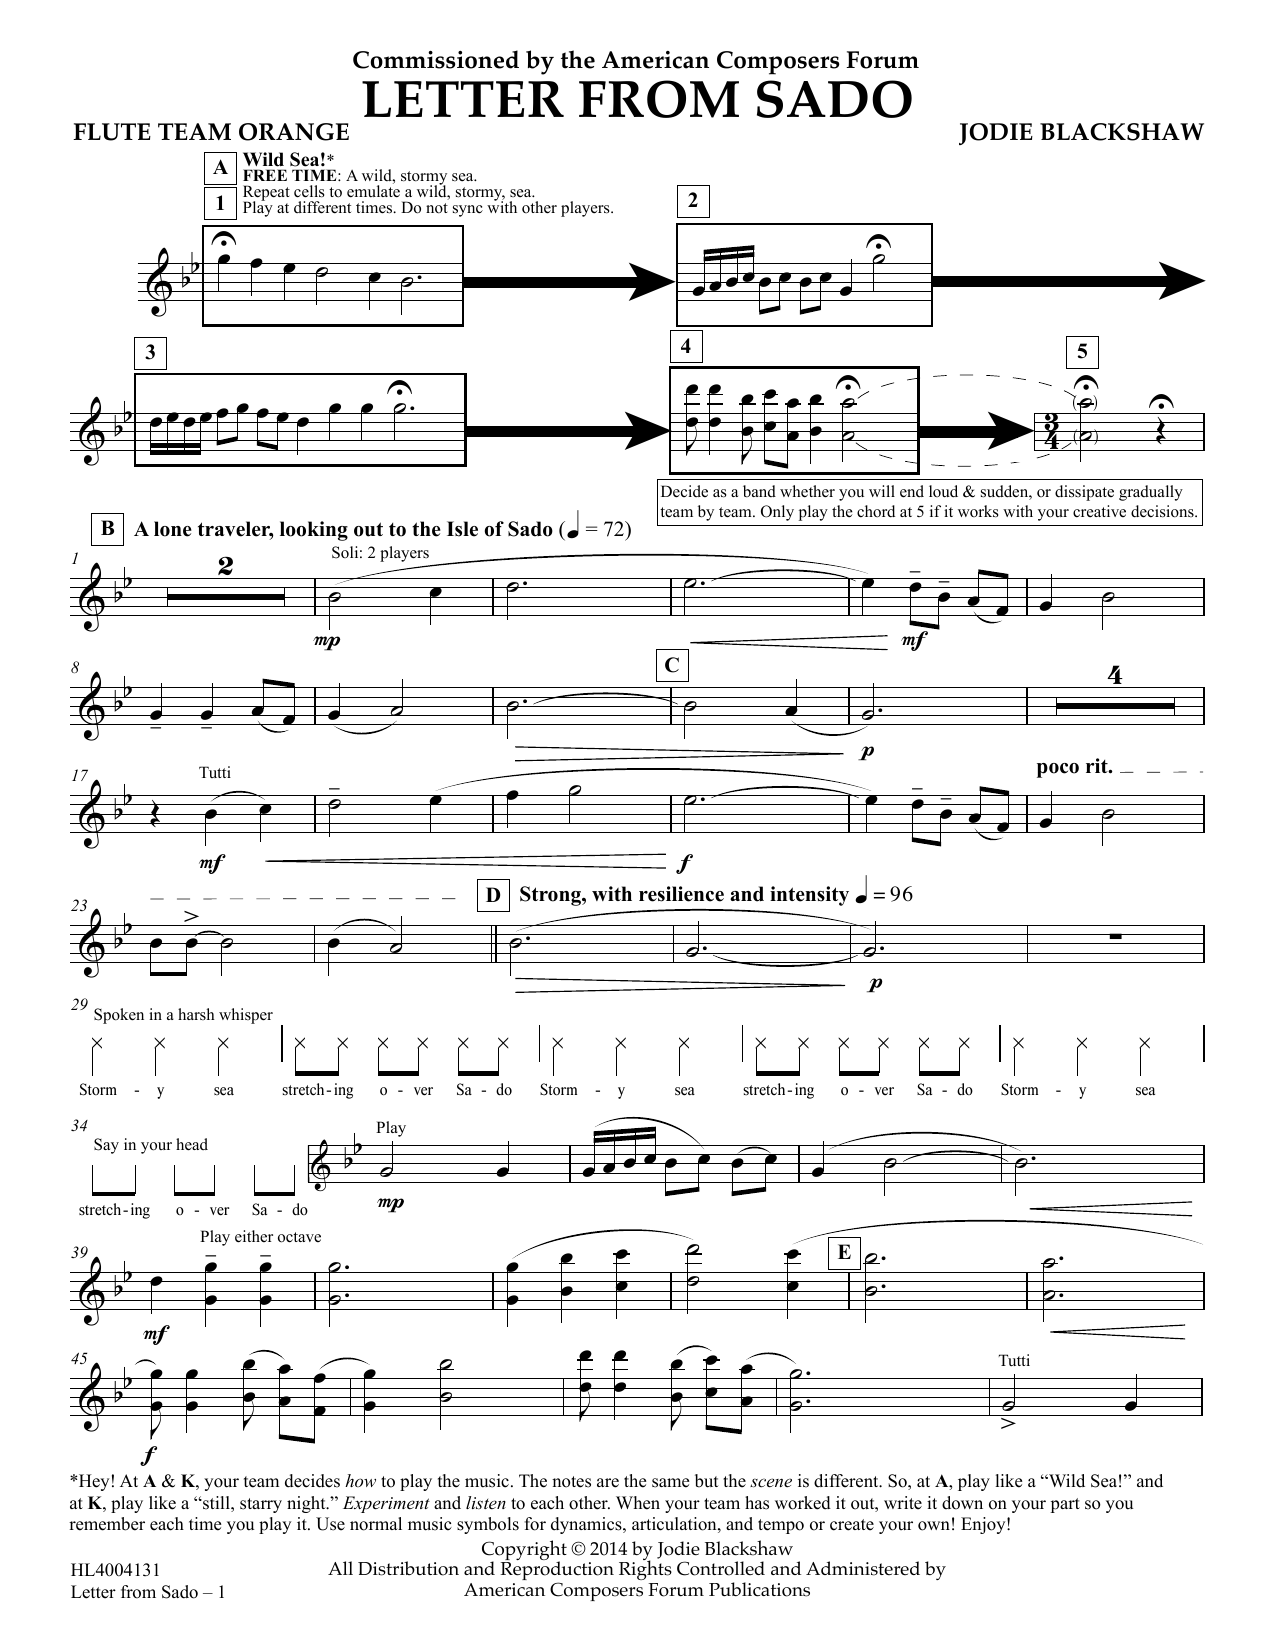 Jodie Blackshaw Letter from Sado - Flute Team Orange Sheet Music Notes & Chords for Concert Band - Download or Print PDF